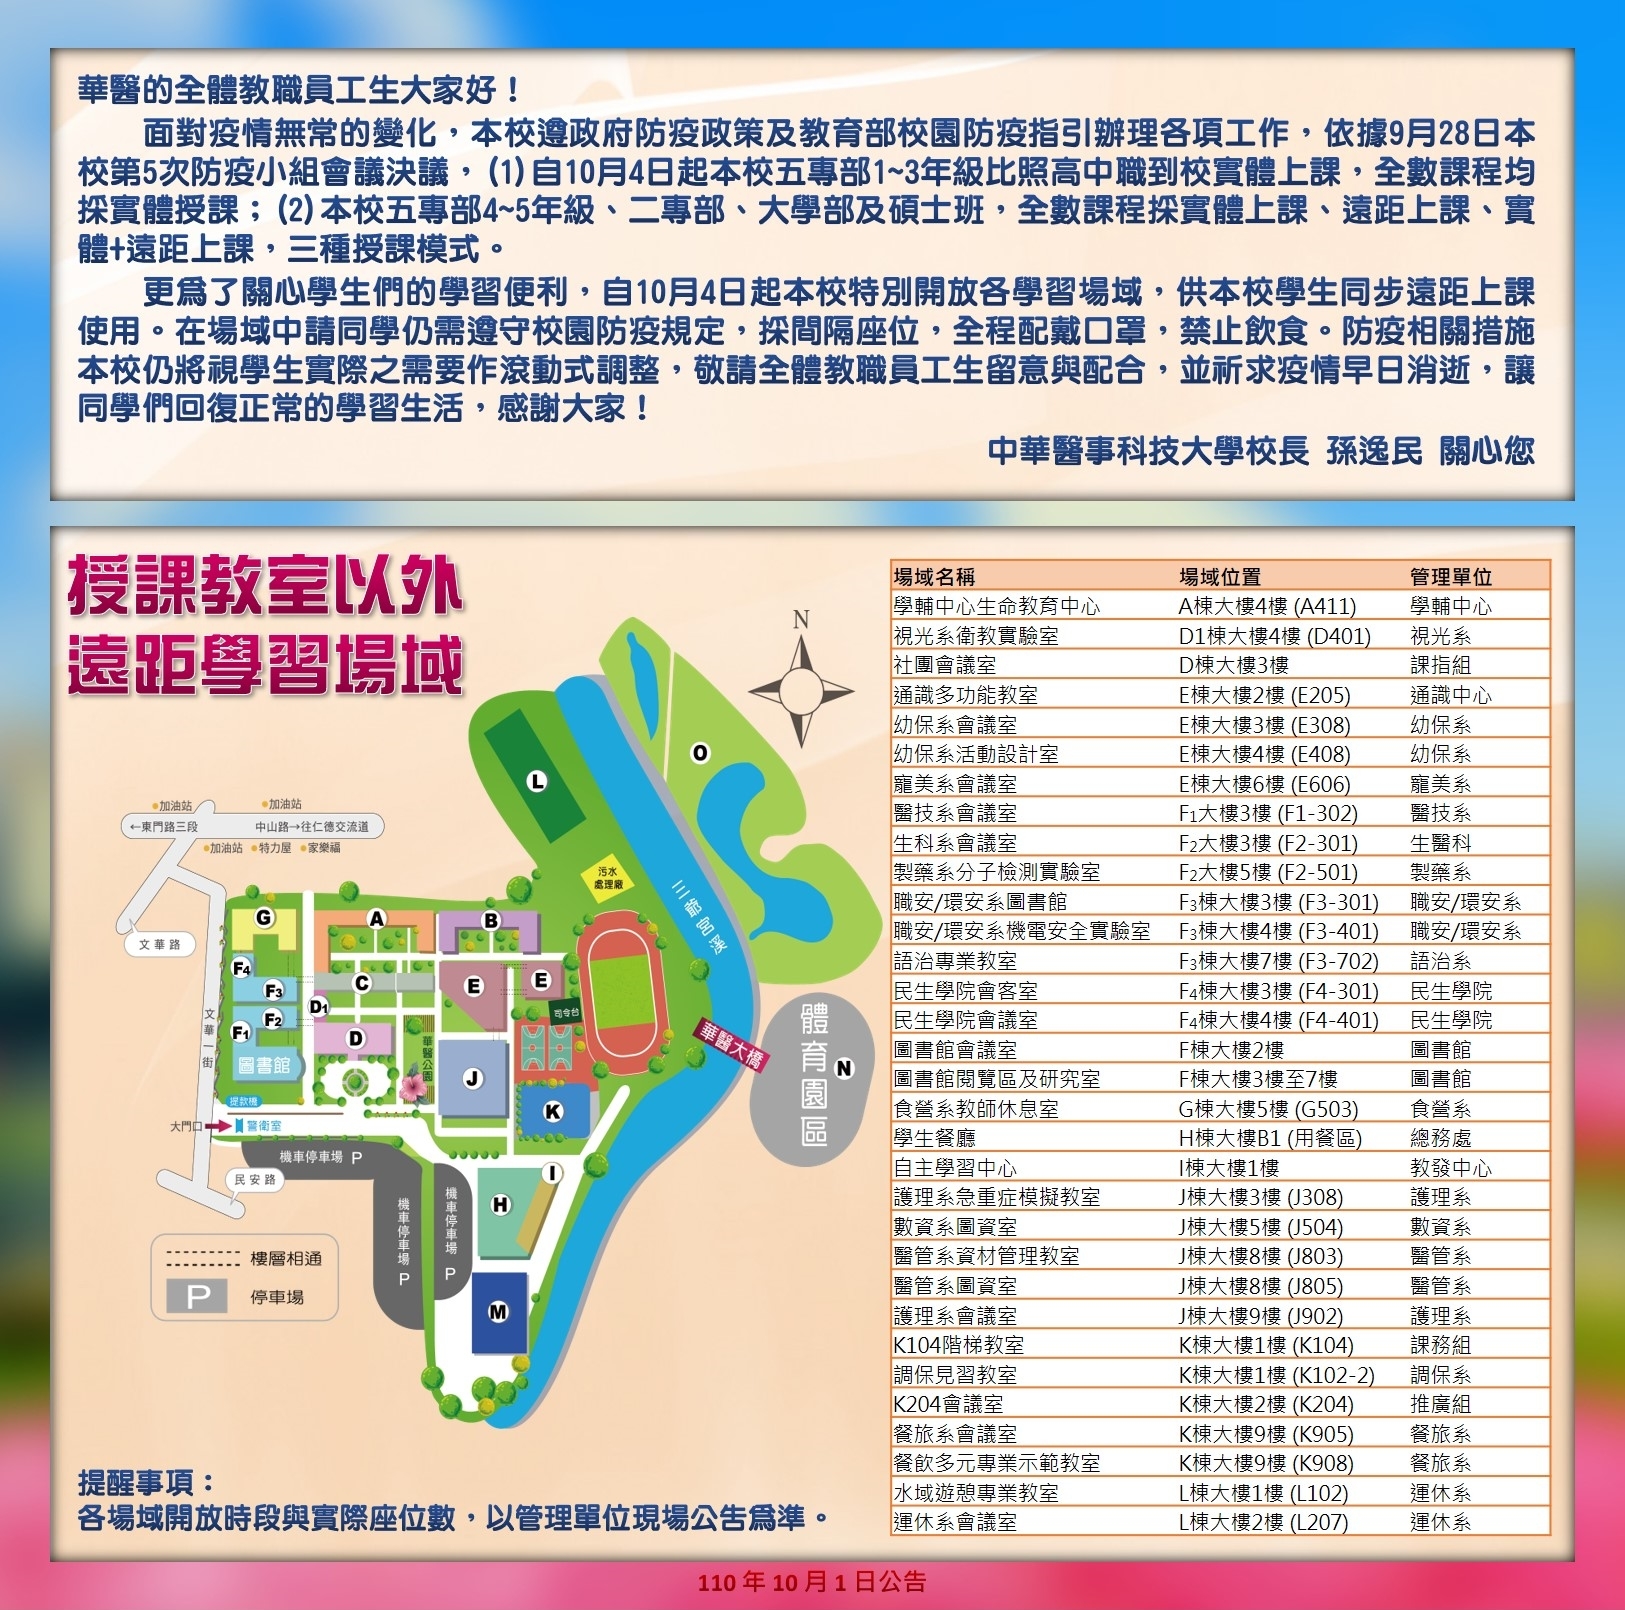 中華醫事科技大學自110年10月4日恢復實體上課後教室以外之遠距學習場域